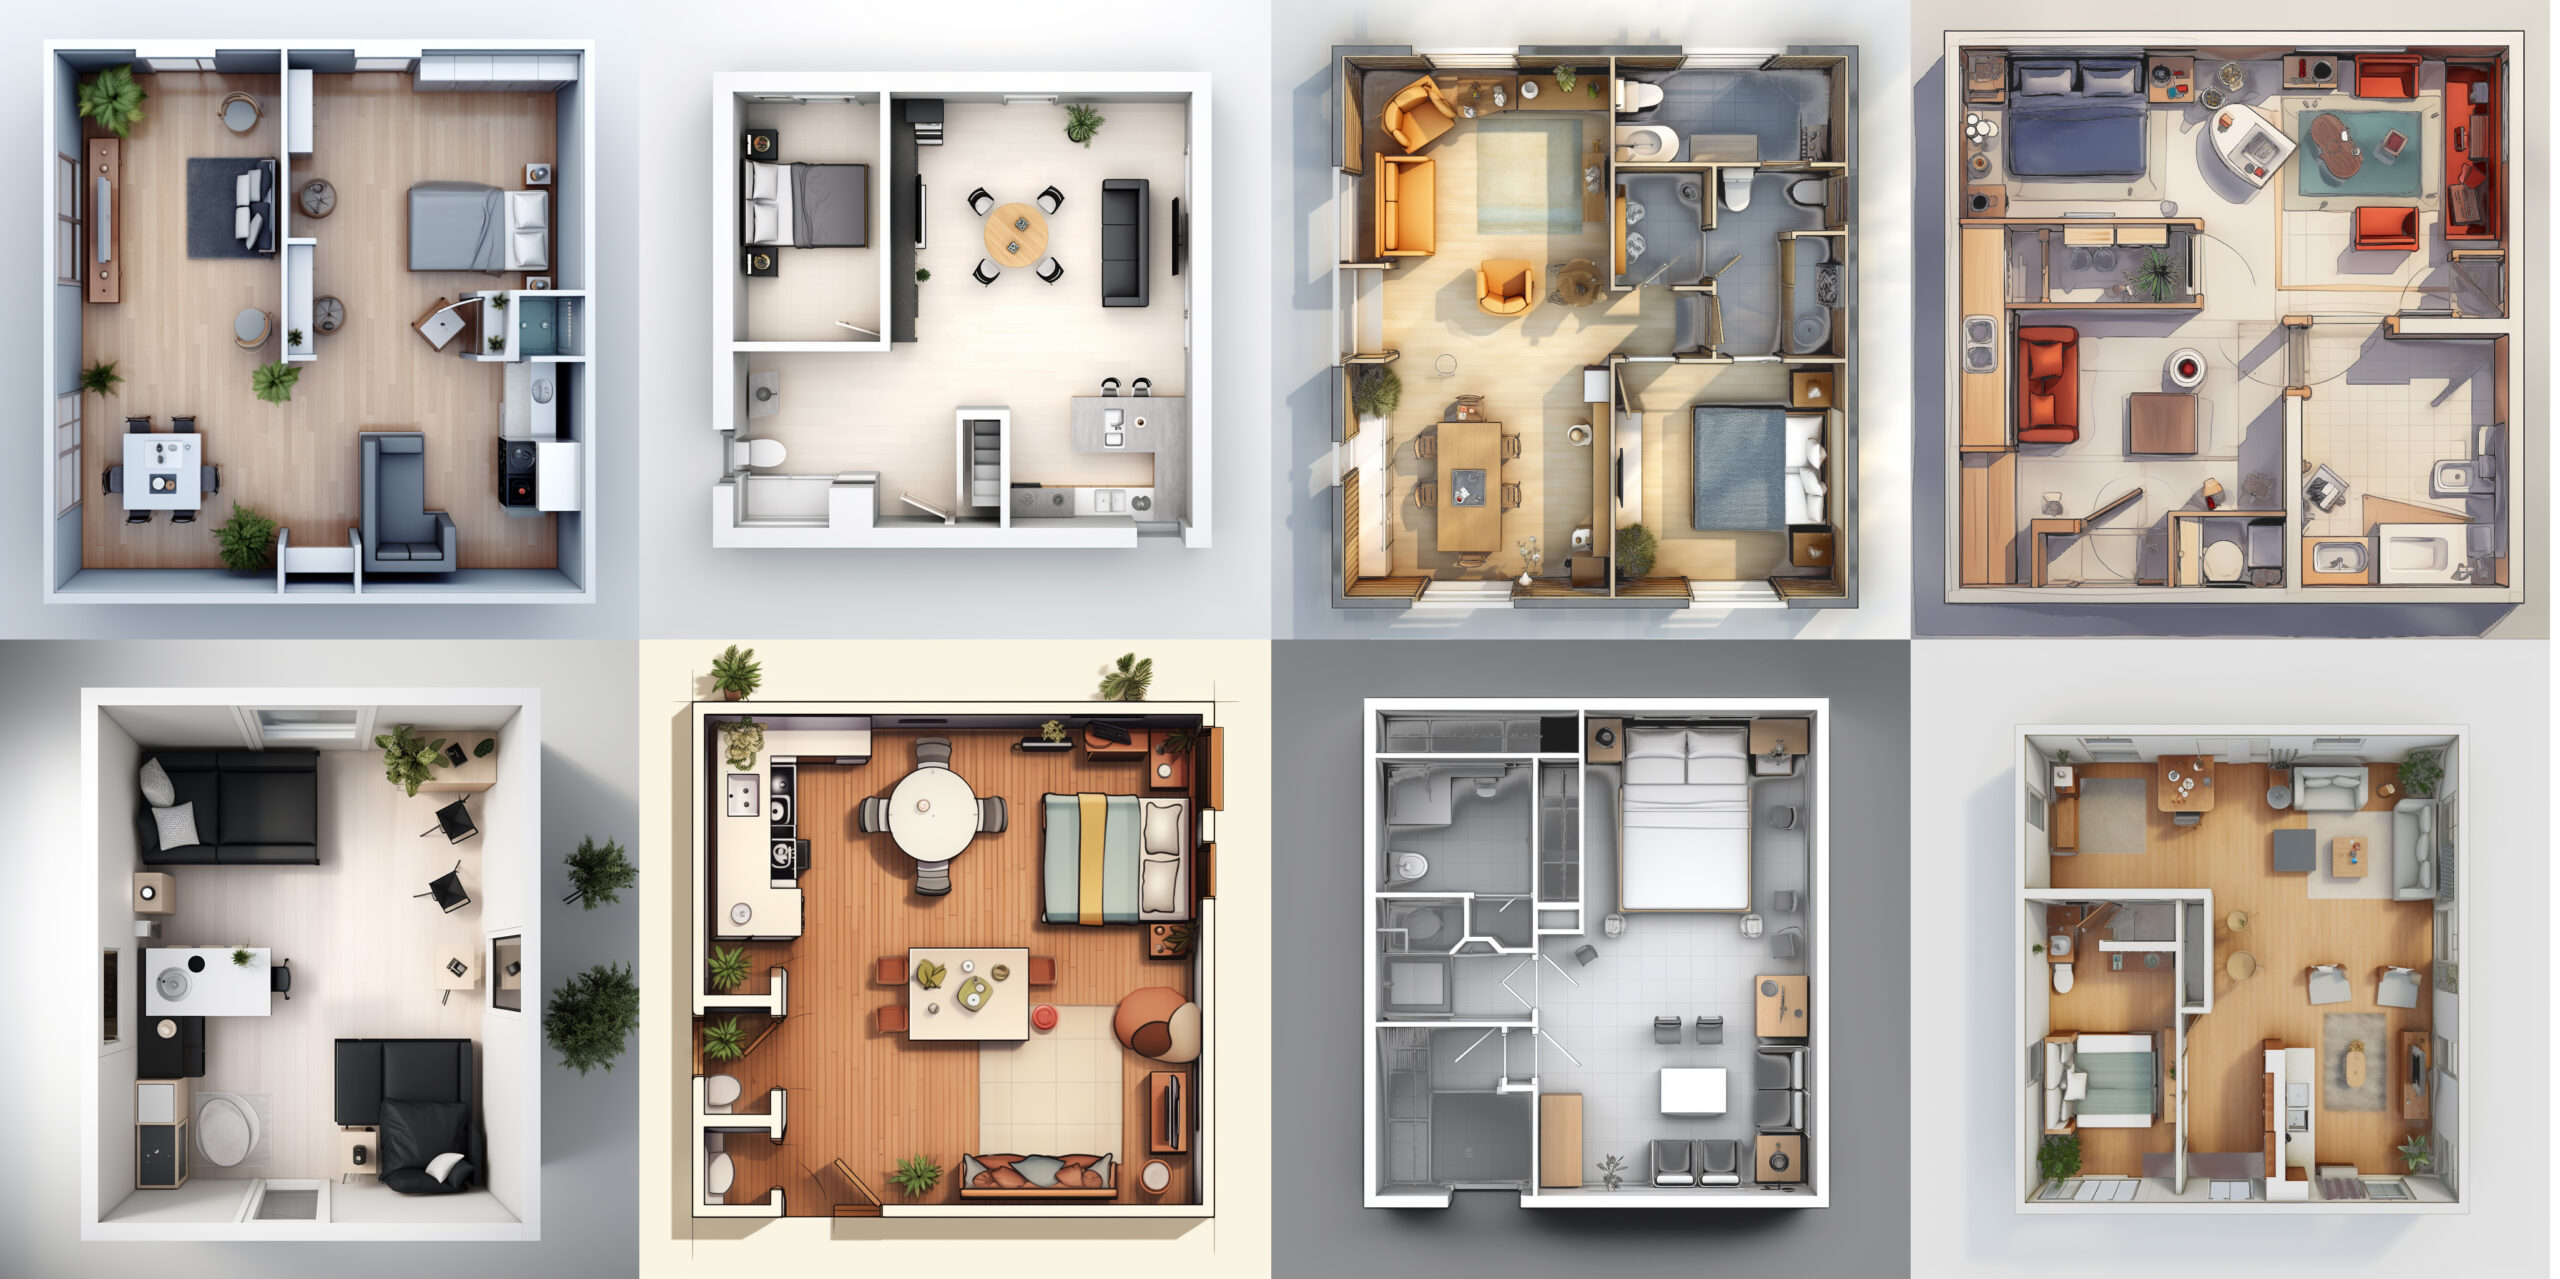 Sample Plan | Sample House Plan | Mumbai Architect Sample Plan | Reference  Plan | Free Plan | Download Plan - HOMEPLANSINDIA